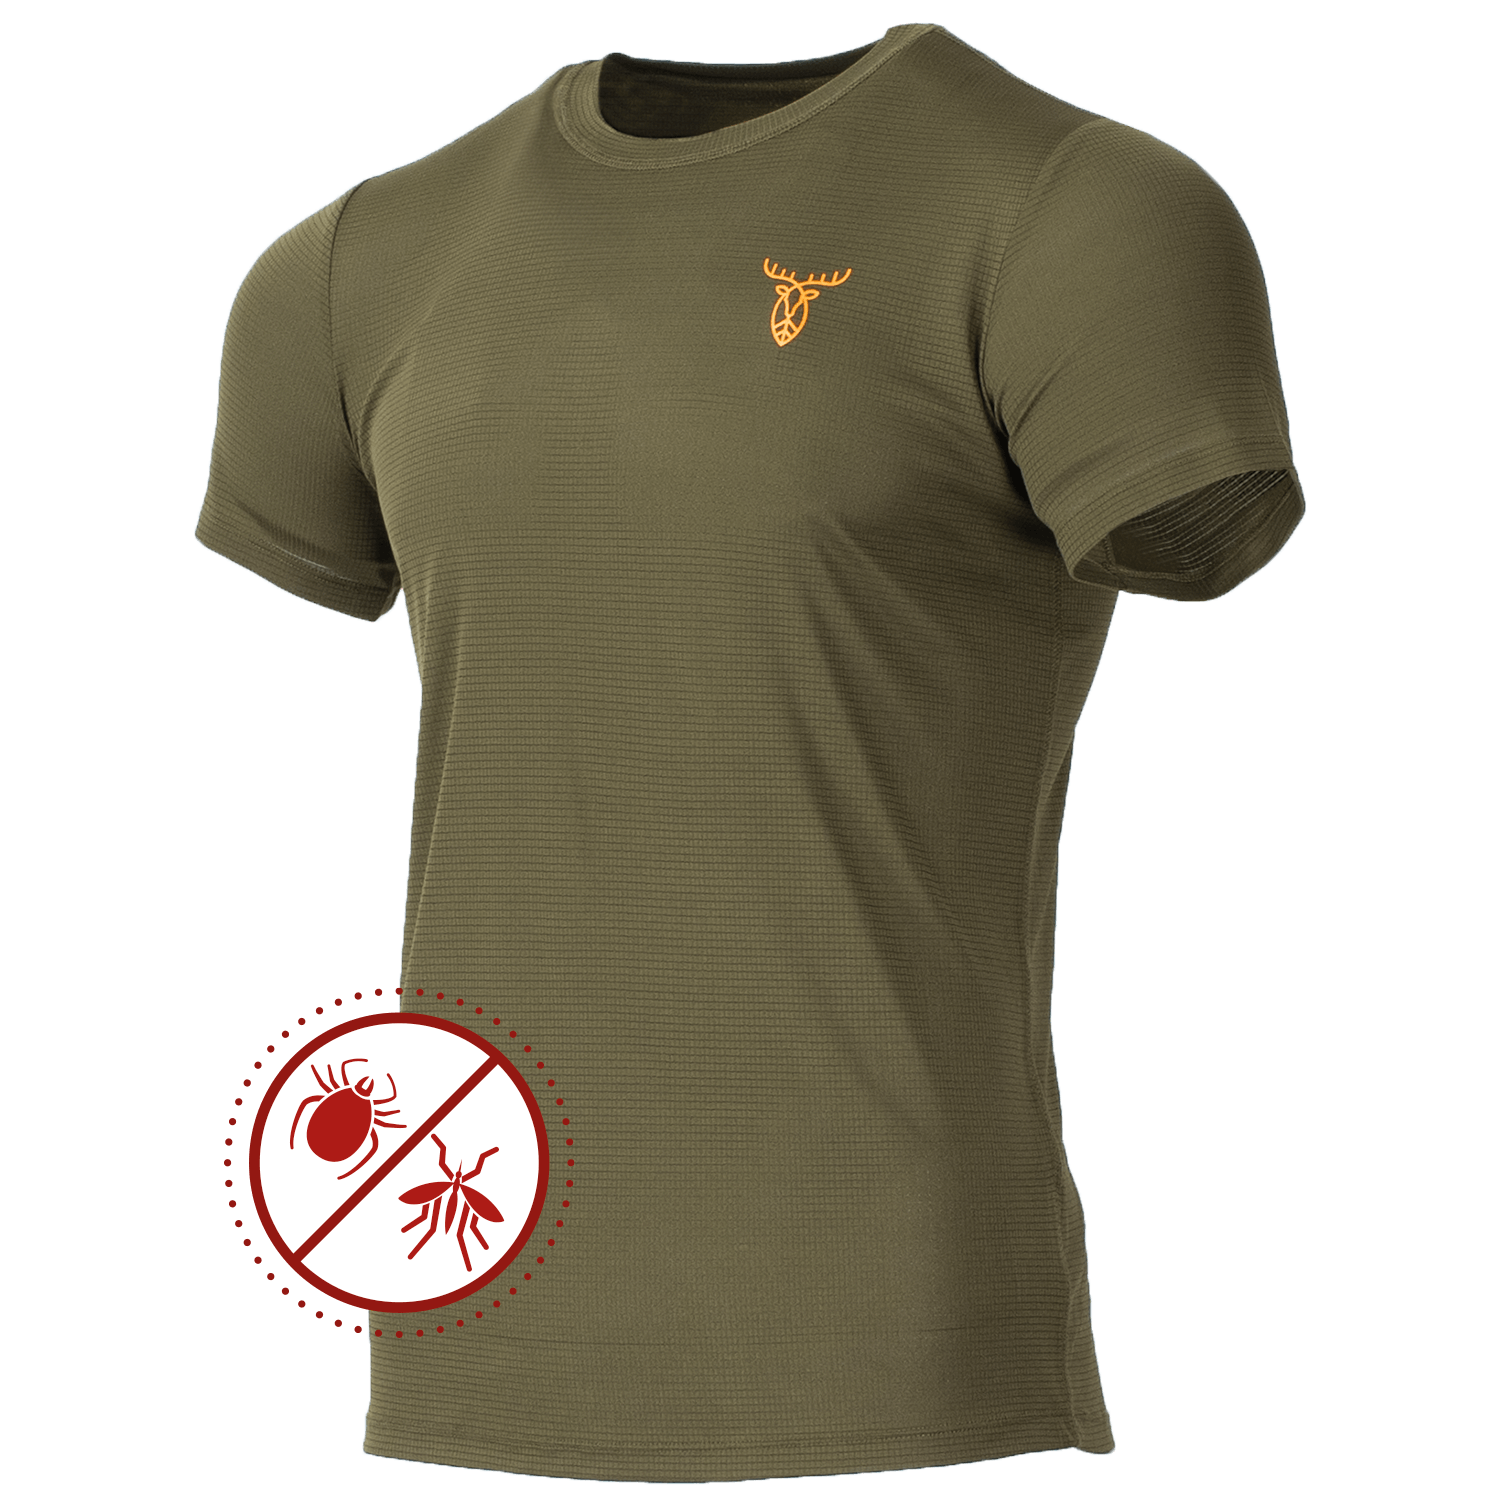 Pirscher Gear Ultralight Tanatex T-Shirt - Summer Hunting Clothing